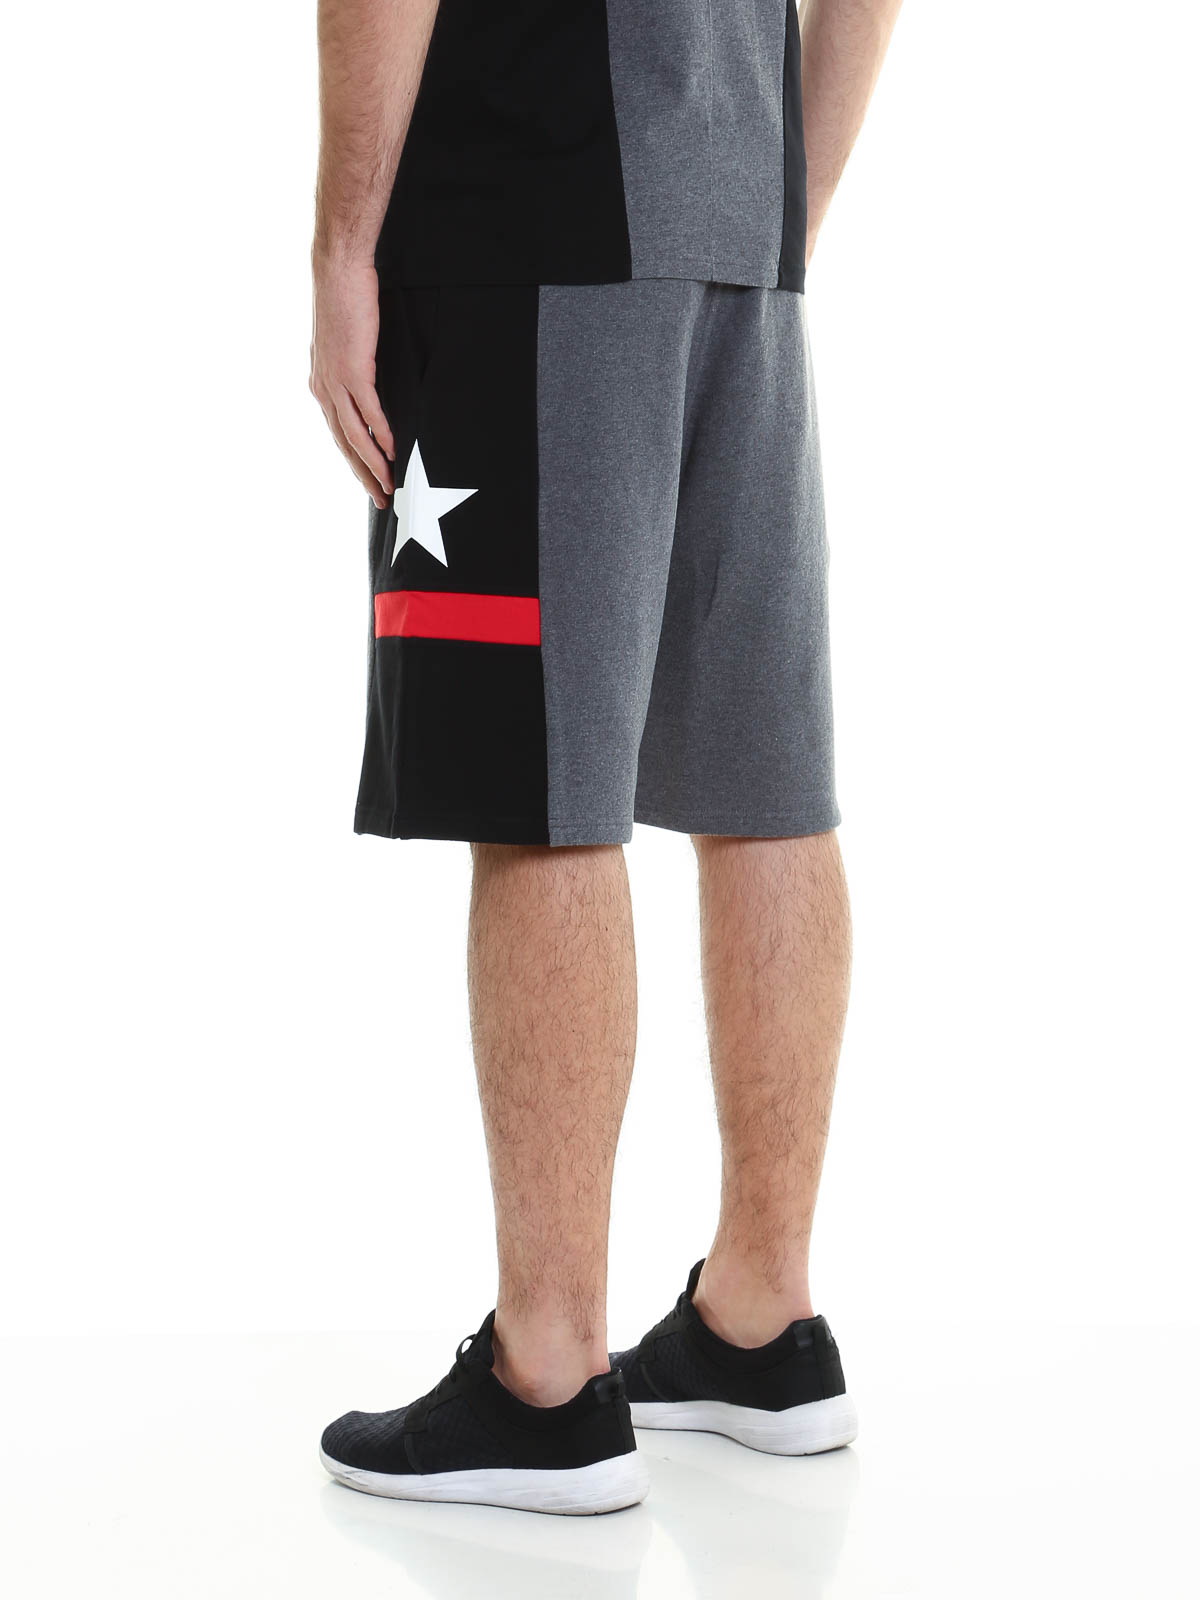 Givenchy - Star printed cotton shorts 